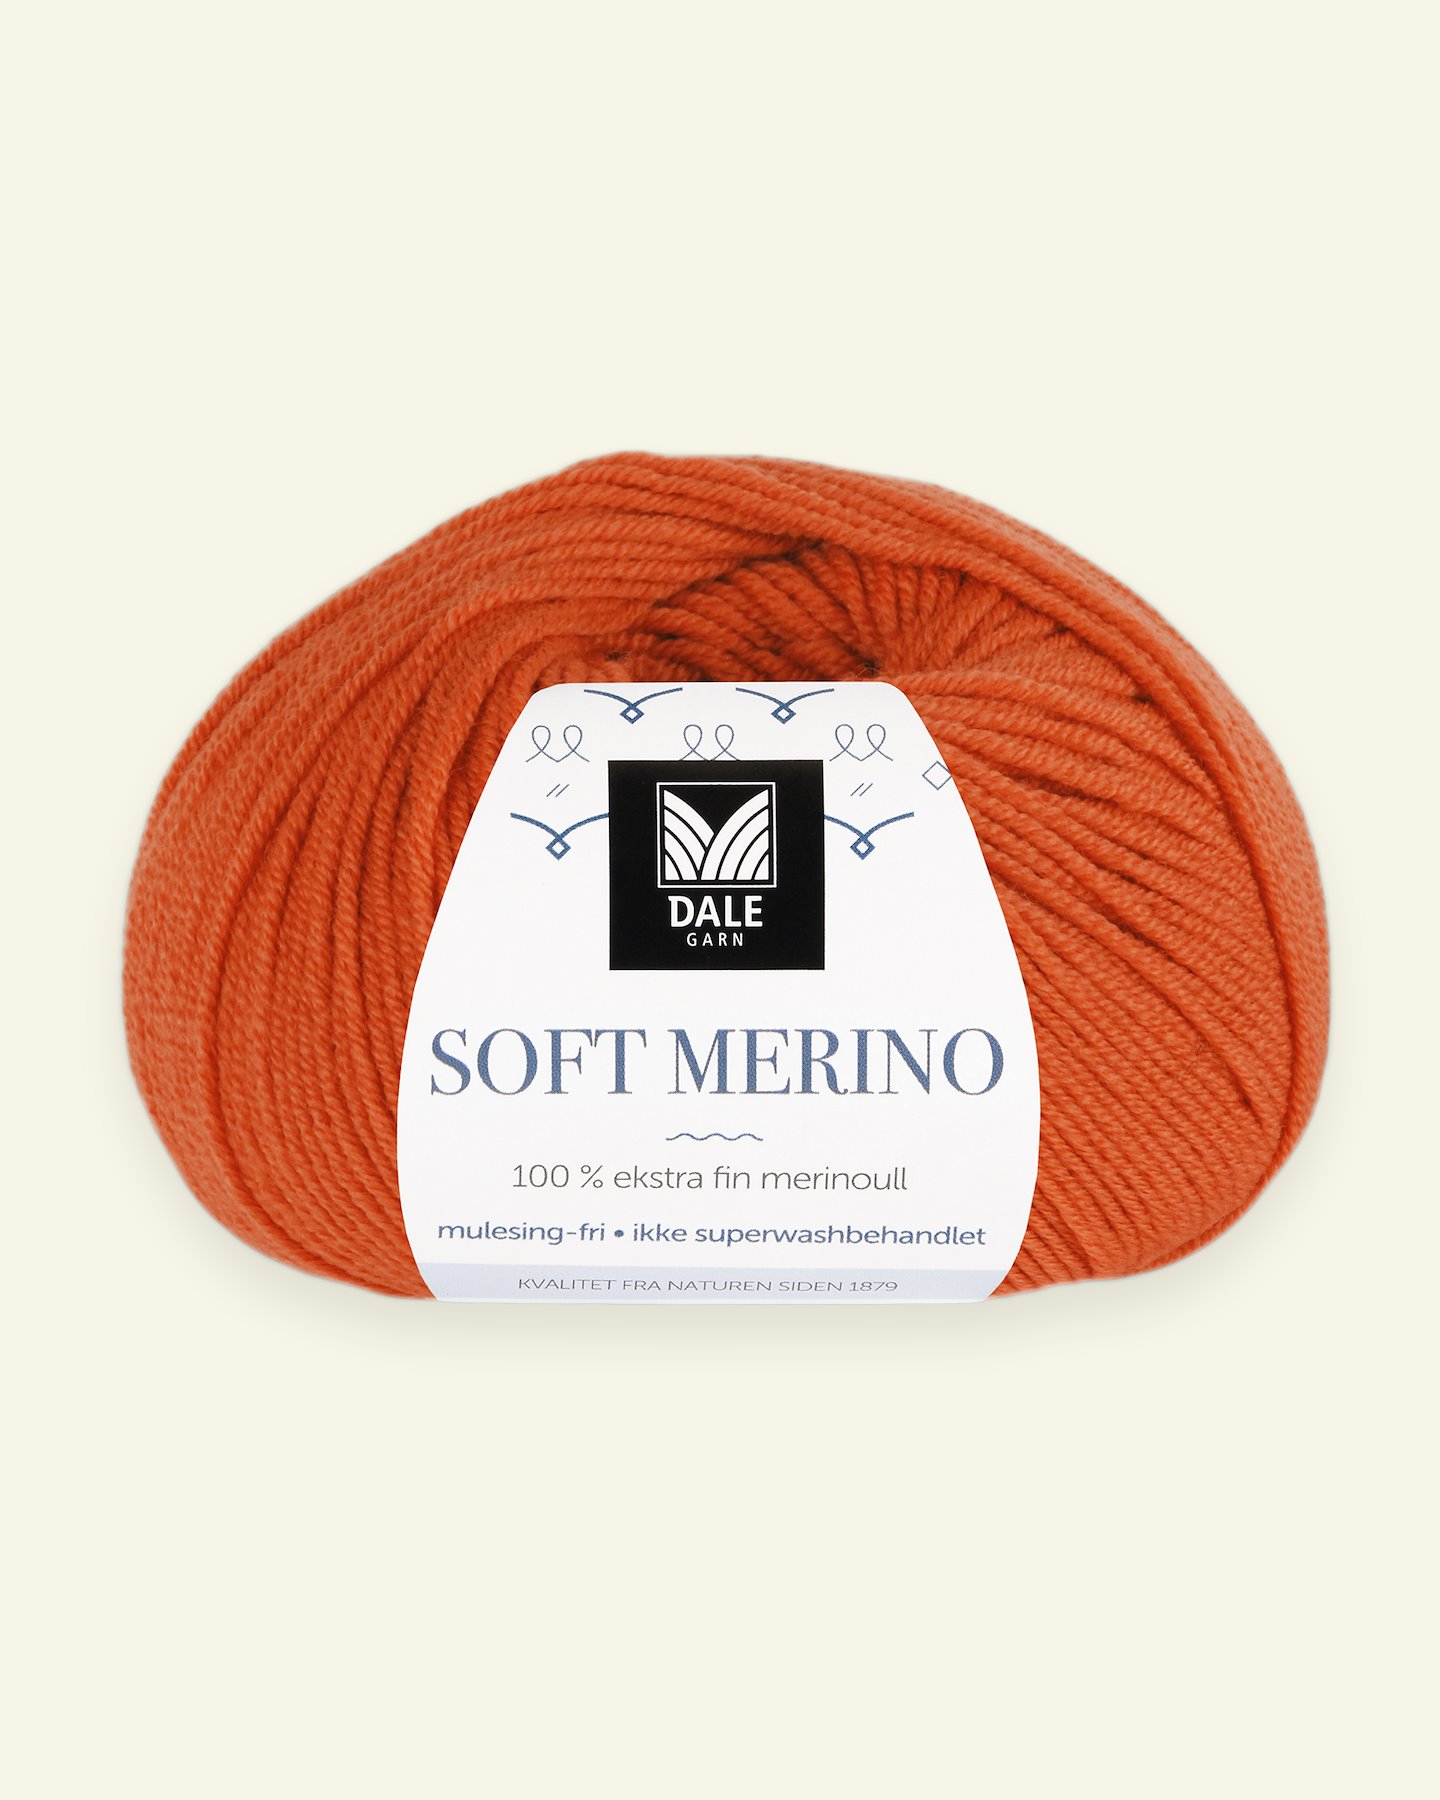 Dale Garn, 100% ekstra fint merinogarn "Soft Merino", Oransje (3033) 90000354_pack